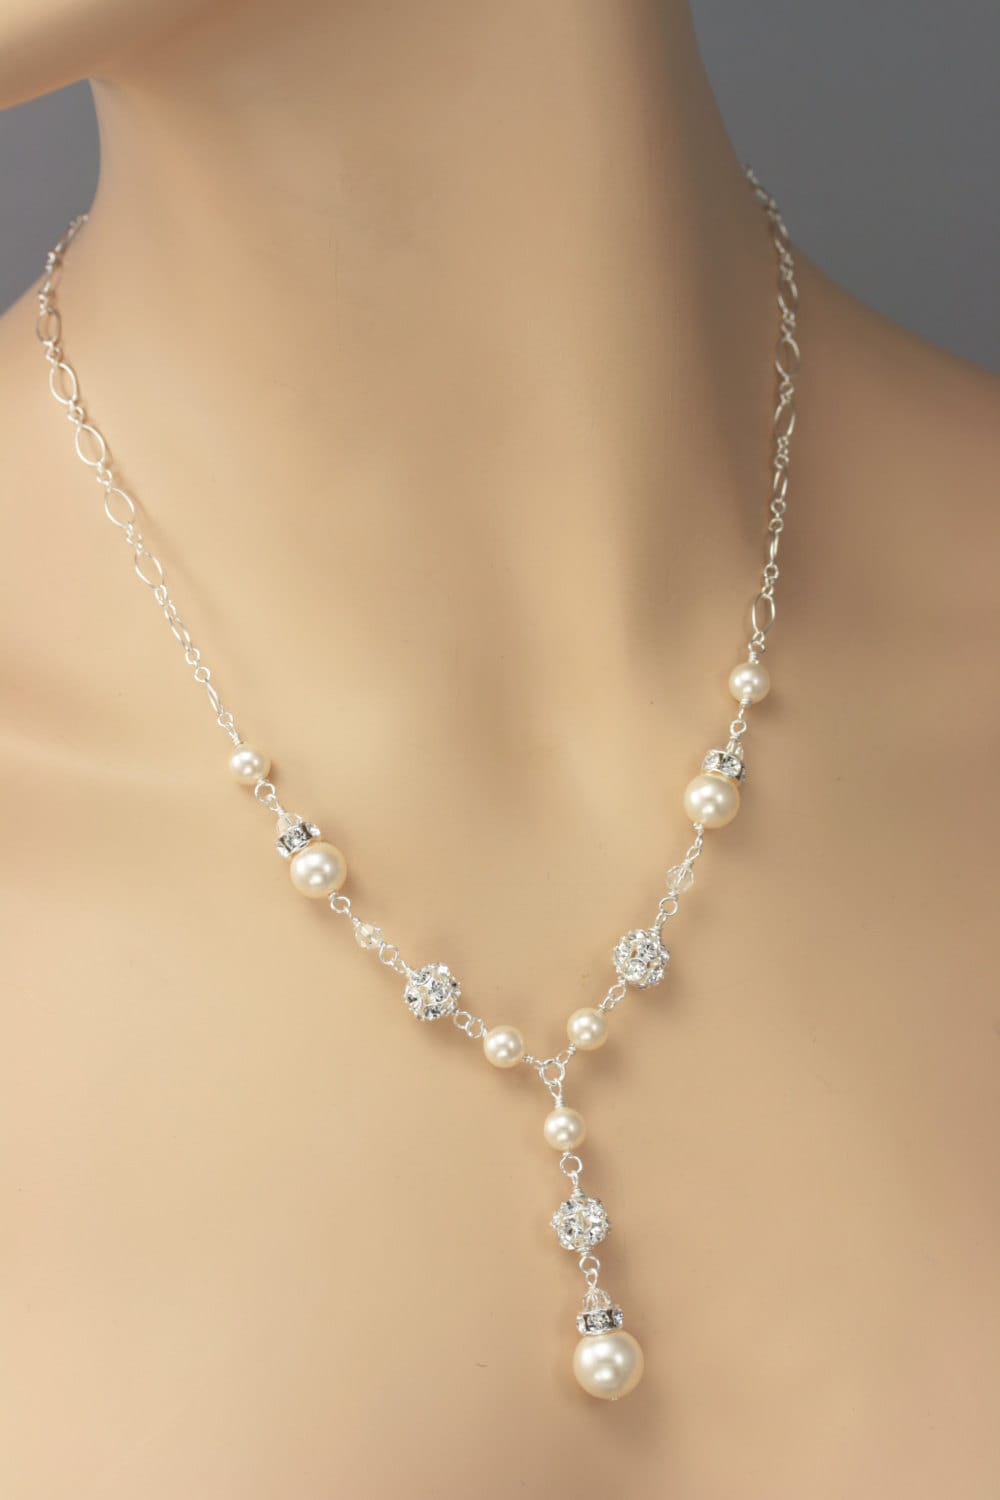 Pearl and Rhinestone Bridal Y Drop Necklace Wedding Necklace